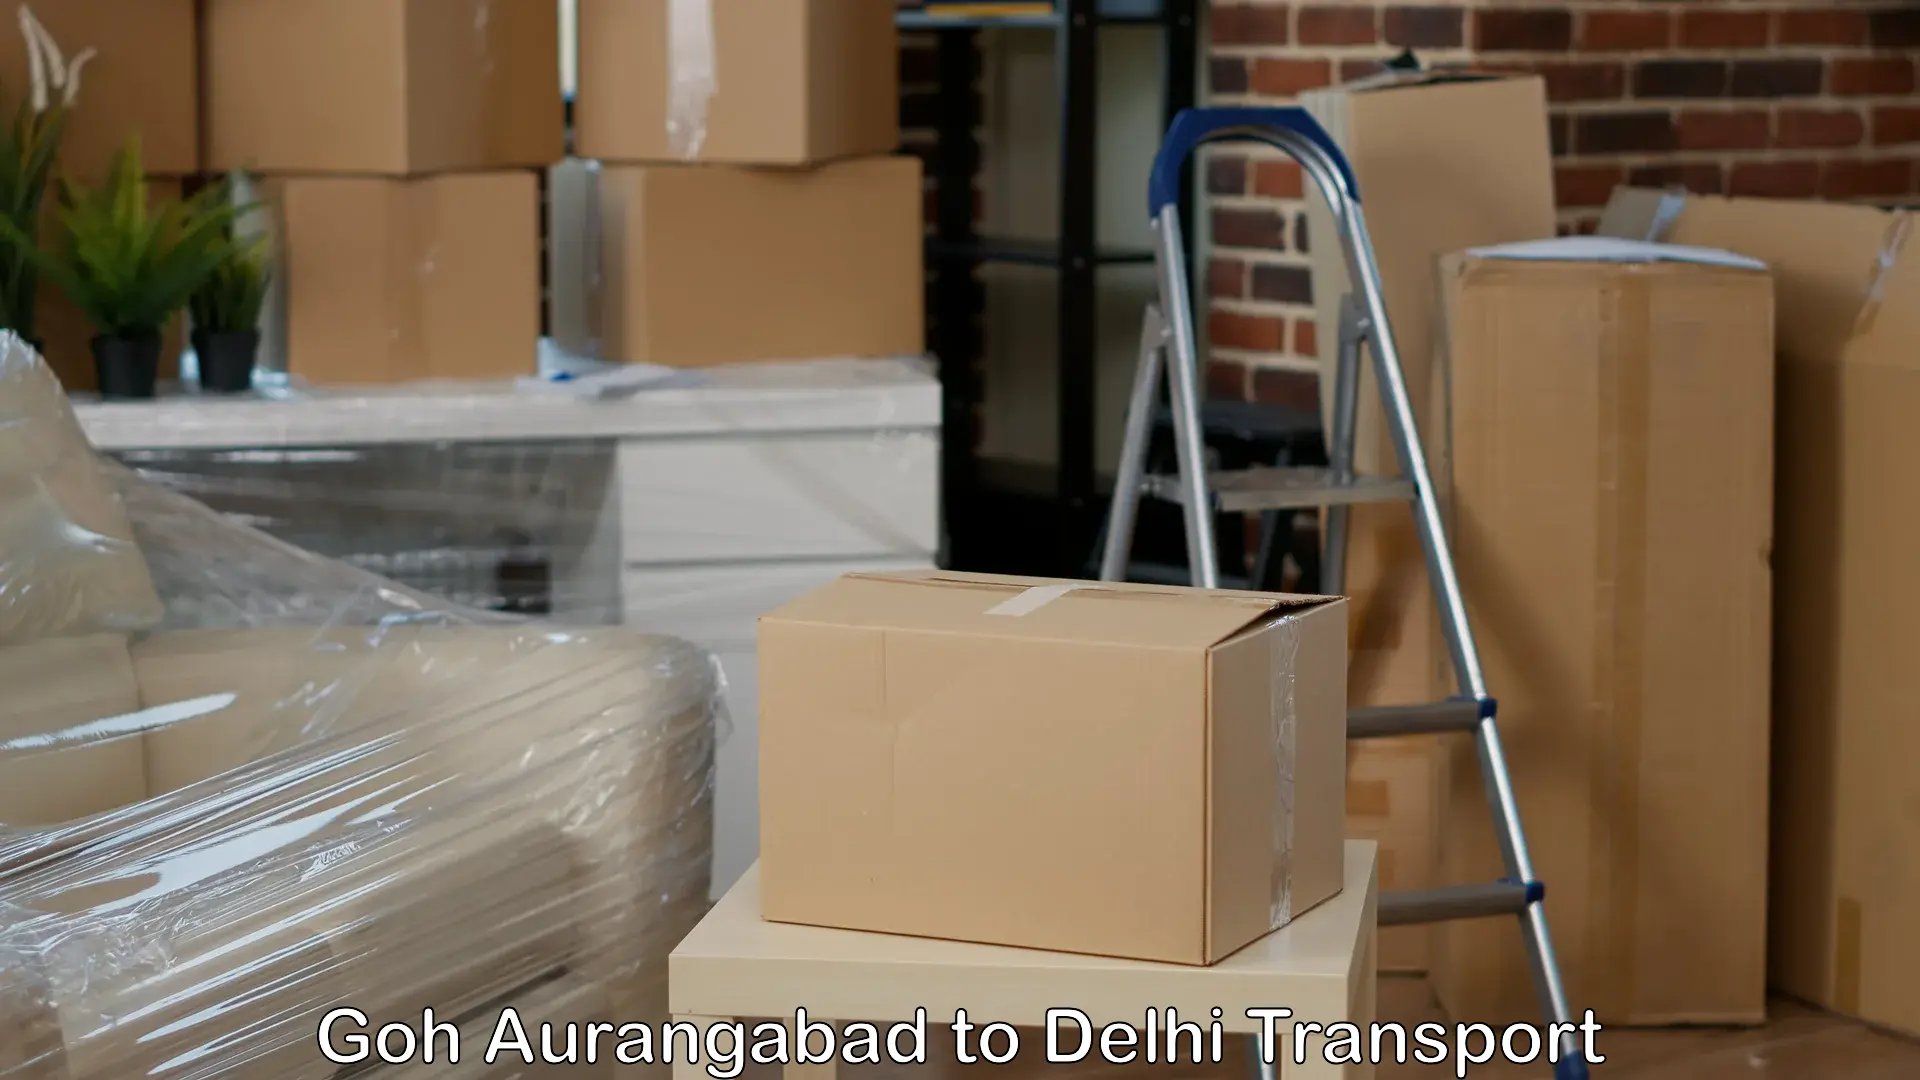 Delivery service Goh Aurangabad to NCR